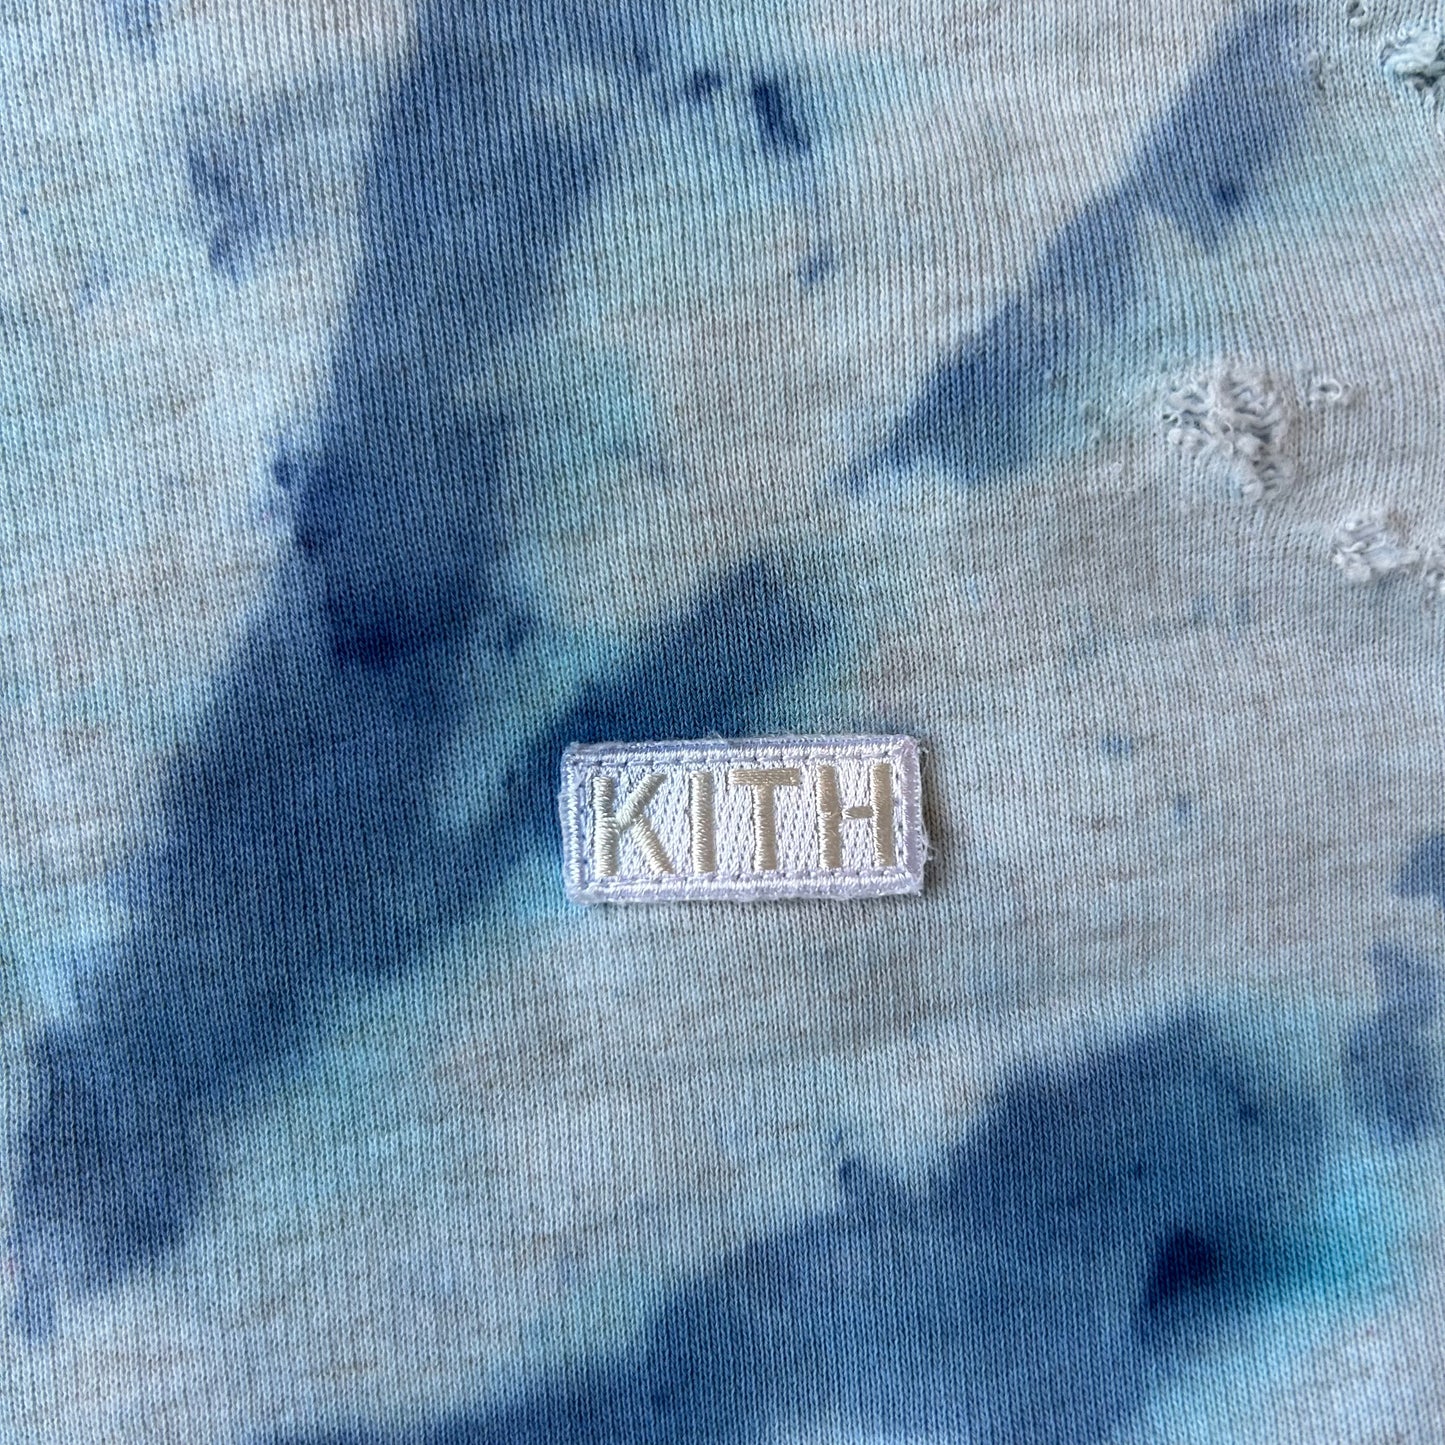 (USED) Kith Tie-Dye Hoodie (Size Medium)